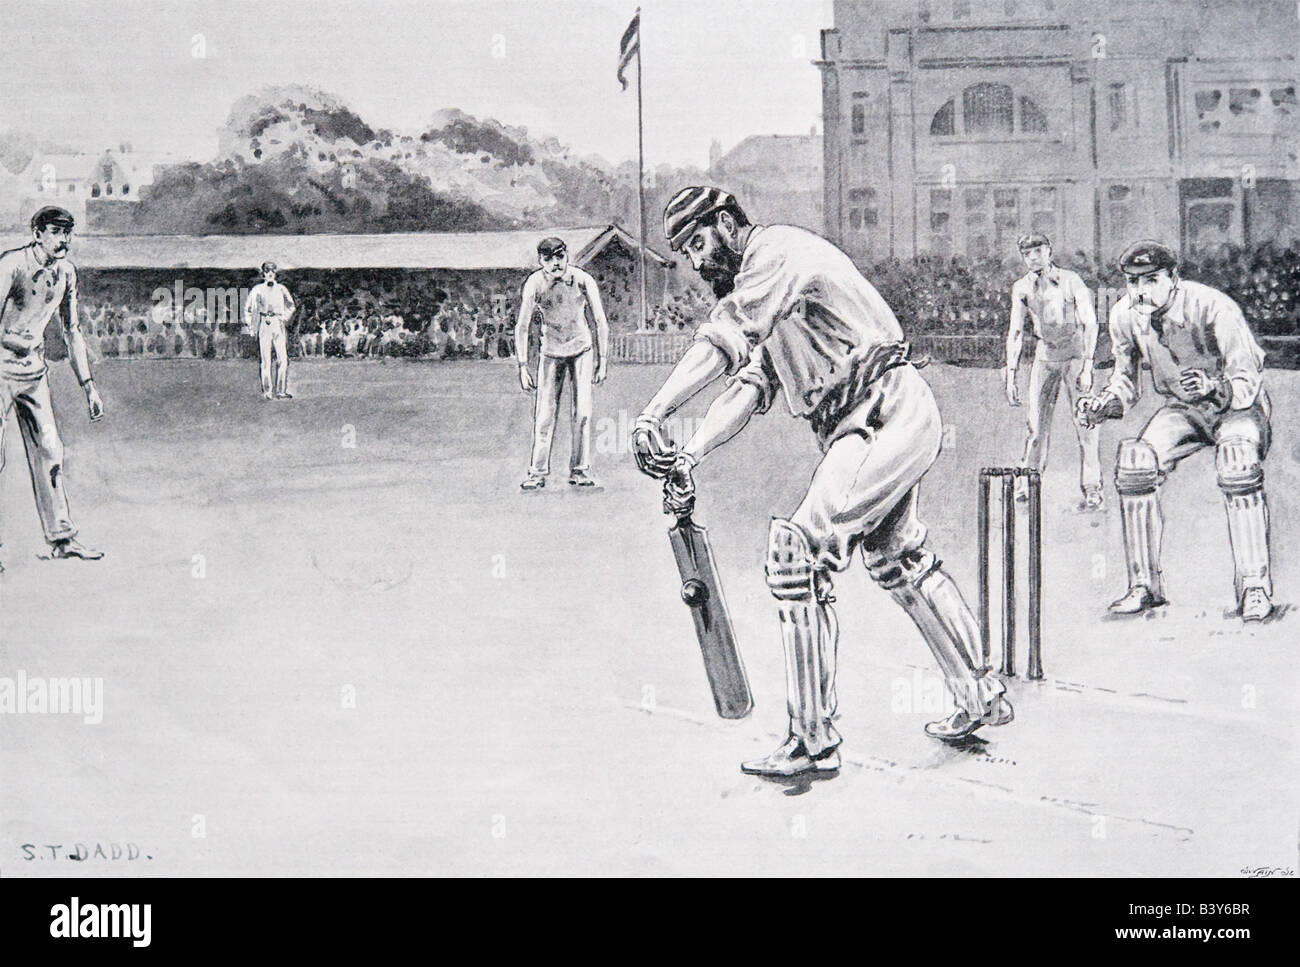 Immagine di stampa A S T Dadd di Dr W G grazia la riproduzione di Cricket per Inghilterra contro l'Australia 1896 per solo uso editoriale Foto Stock